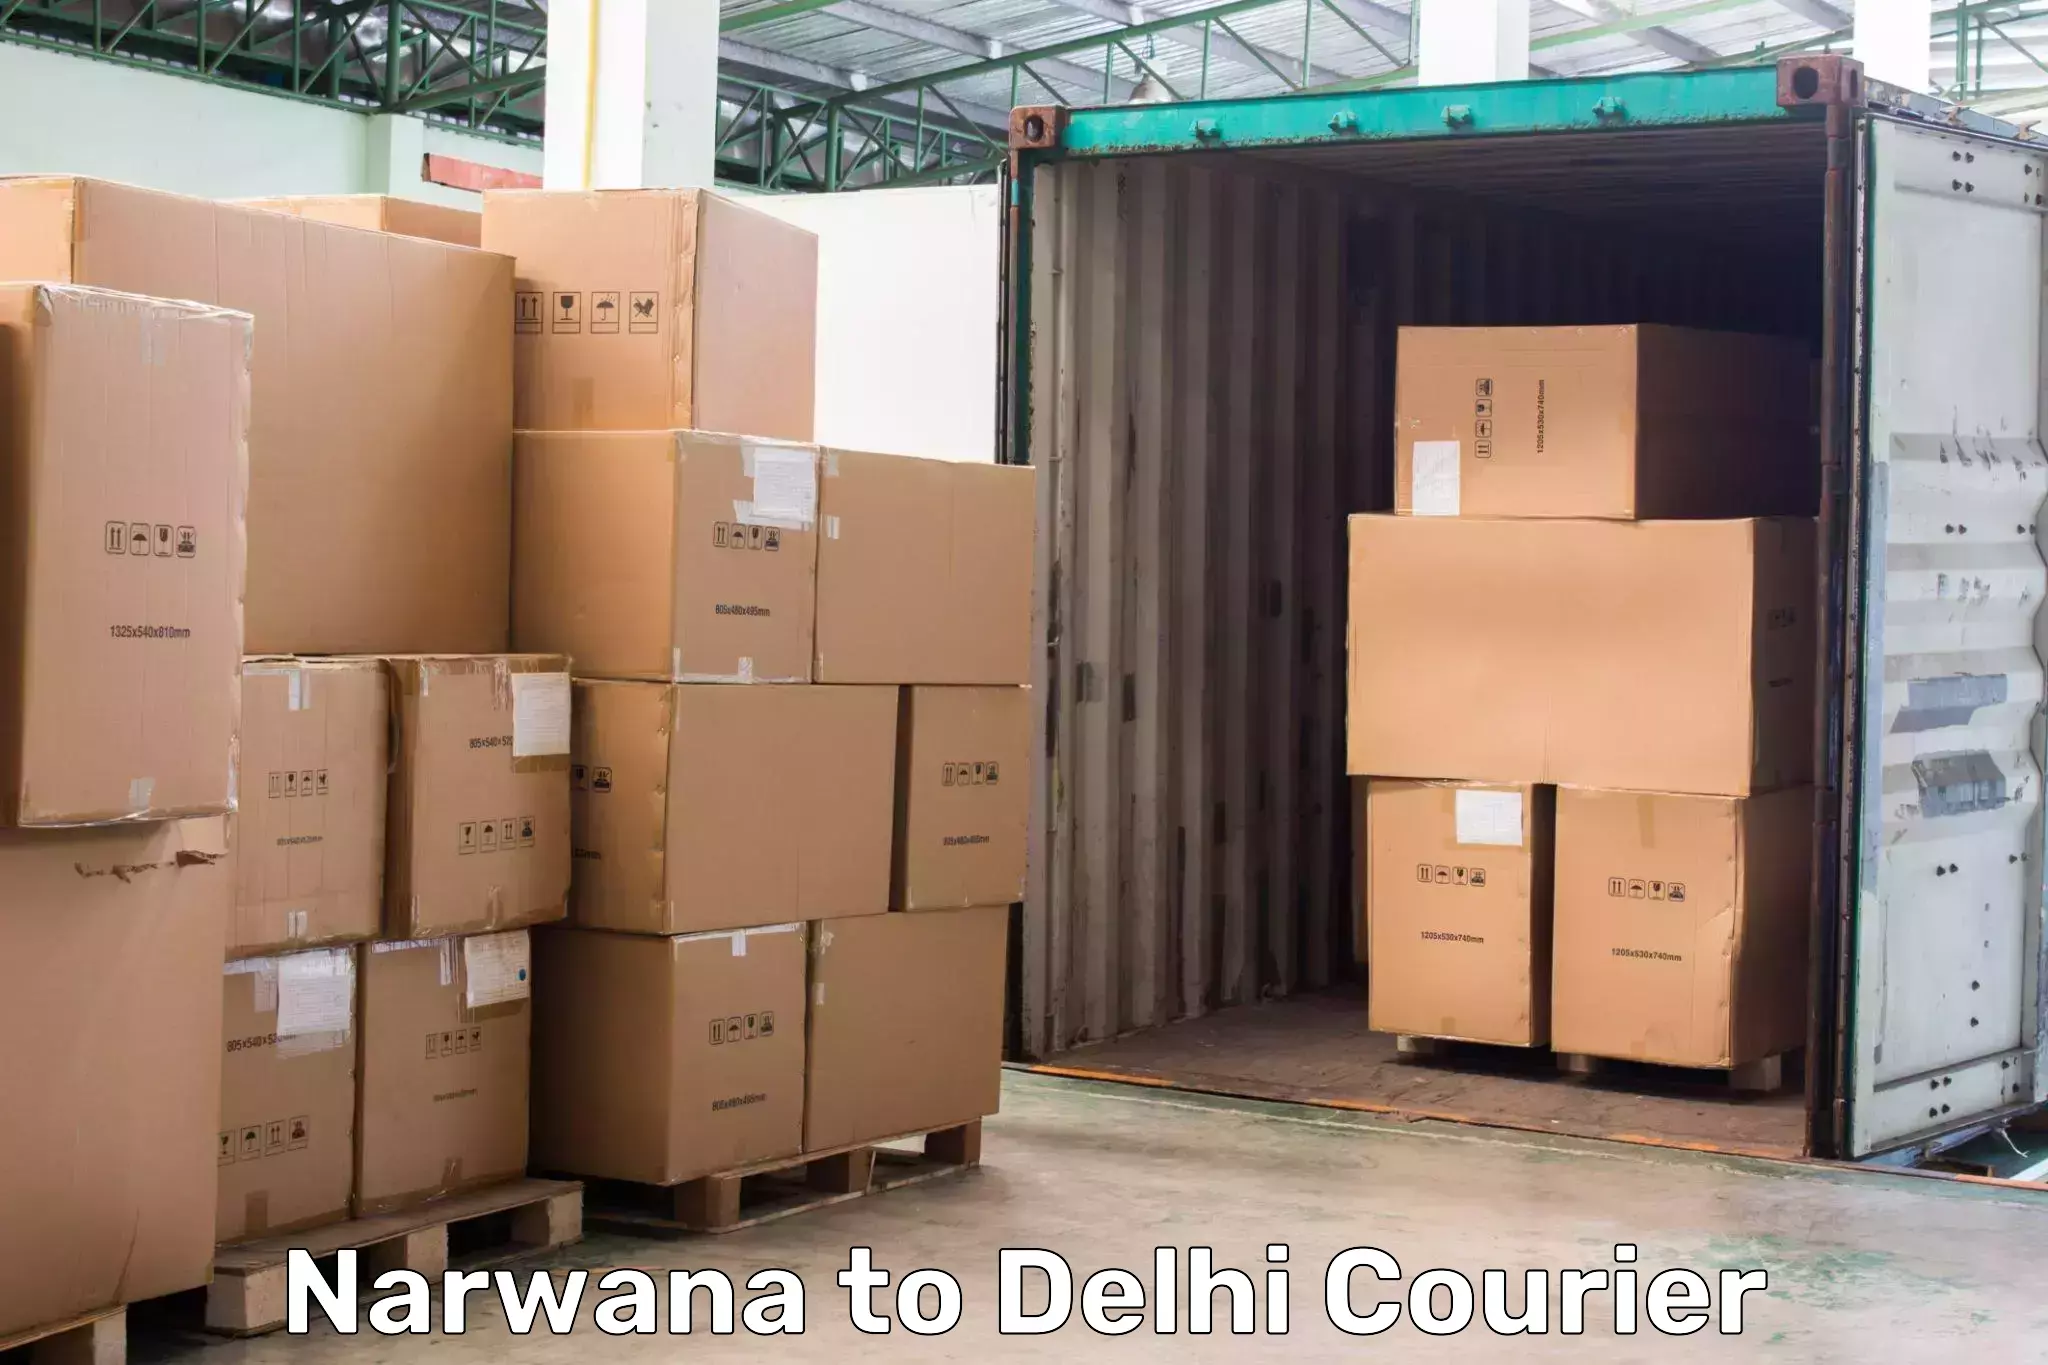 Online package tracking Narwana to Jawaharlal Nehru University New Delhi